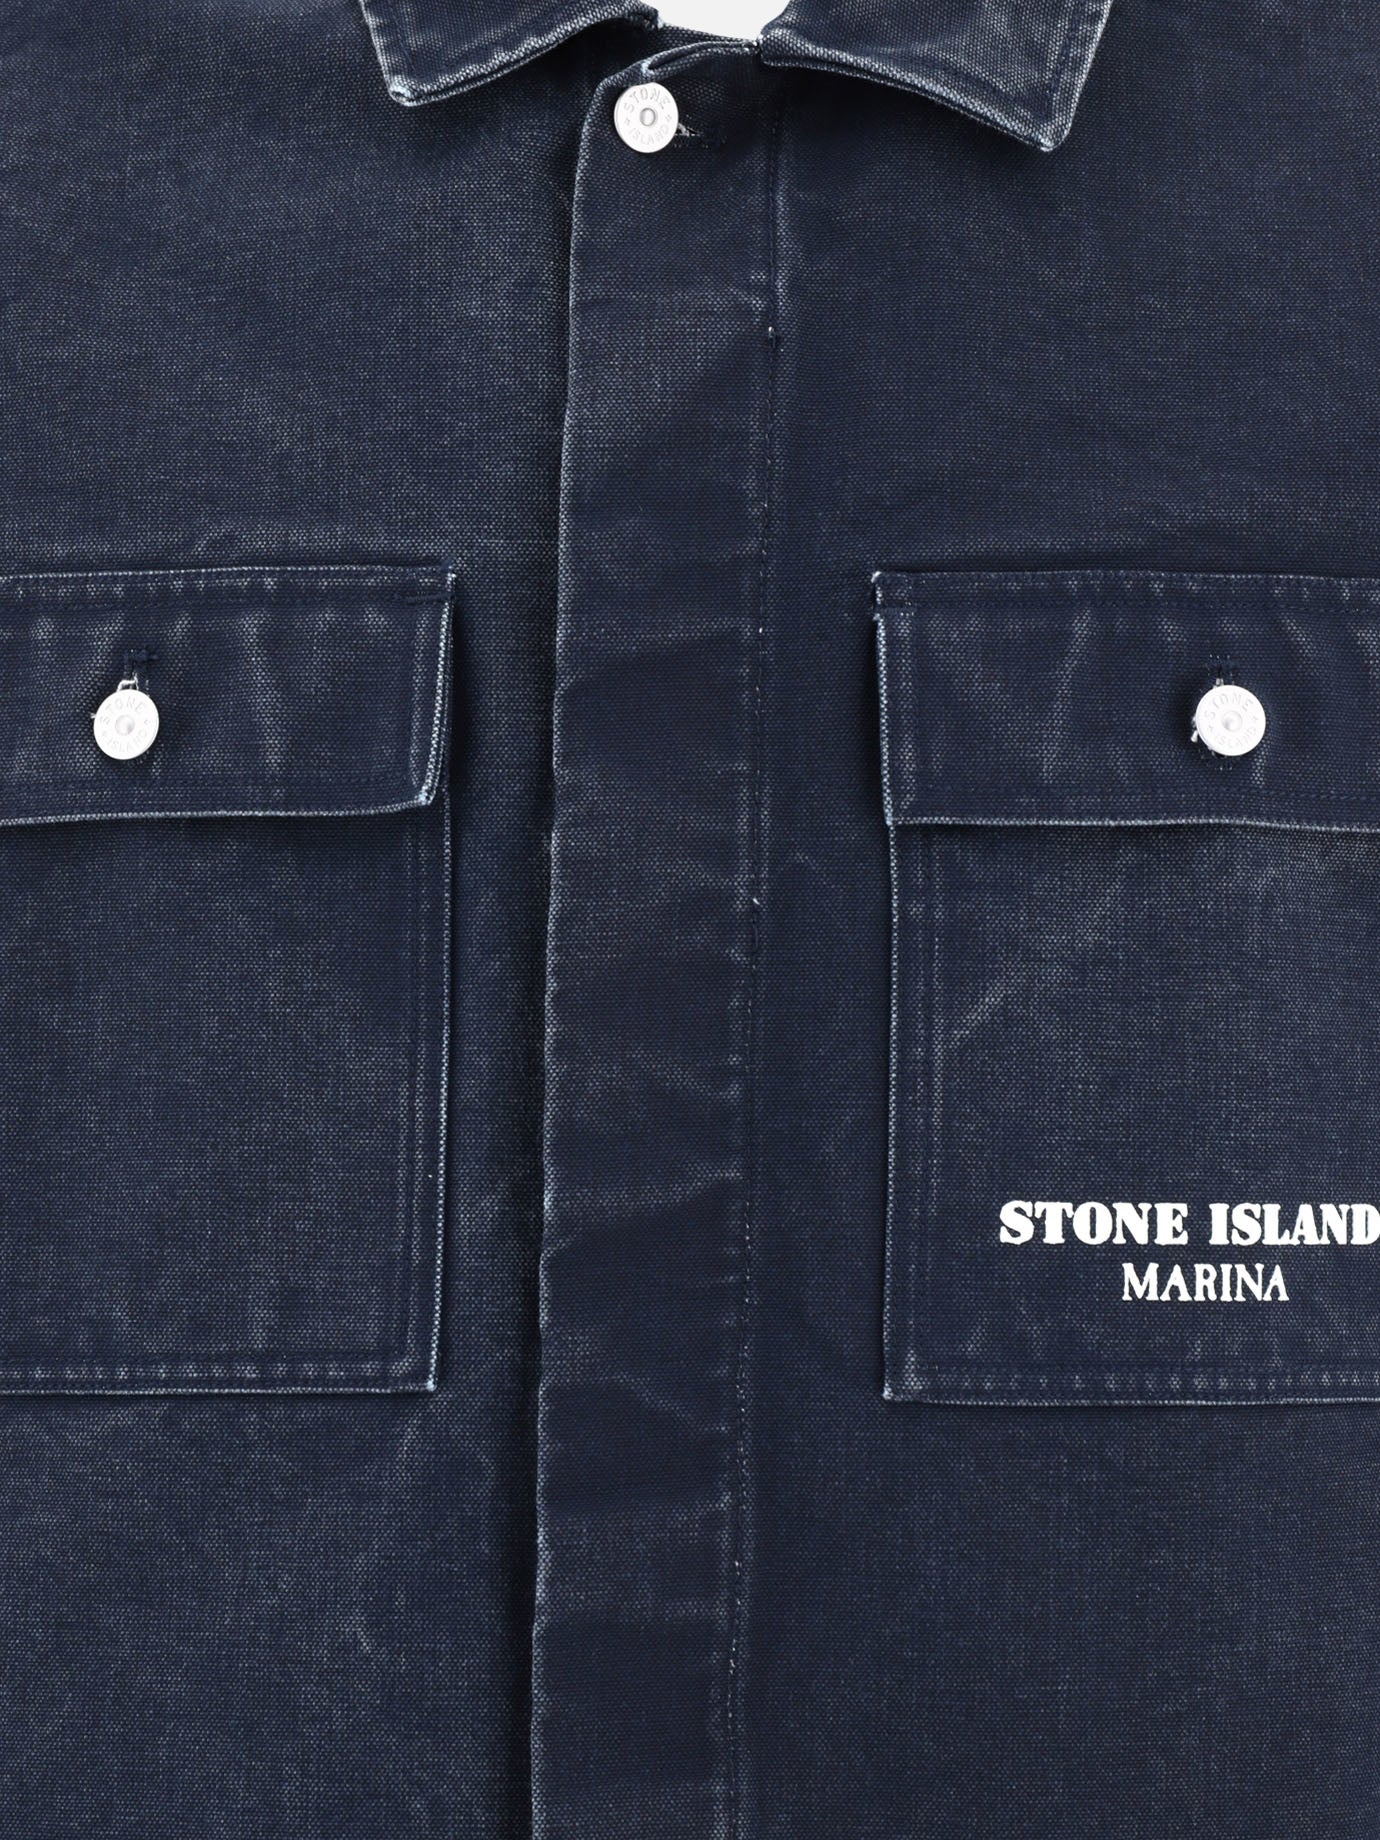 "Stone Island Marina" overshirt jacket